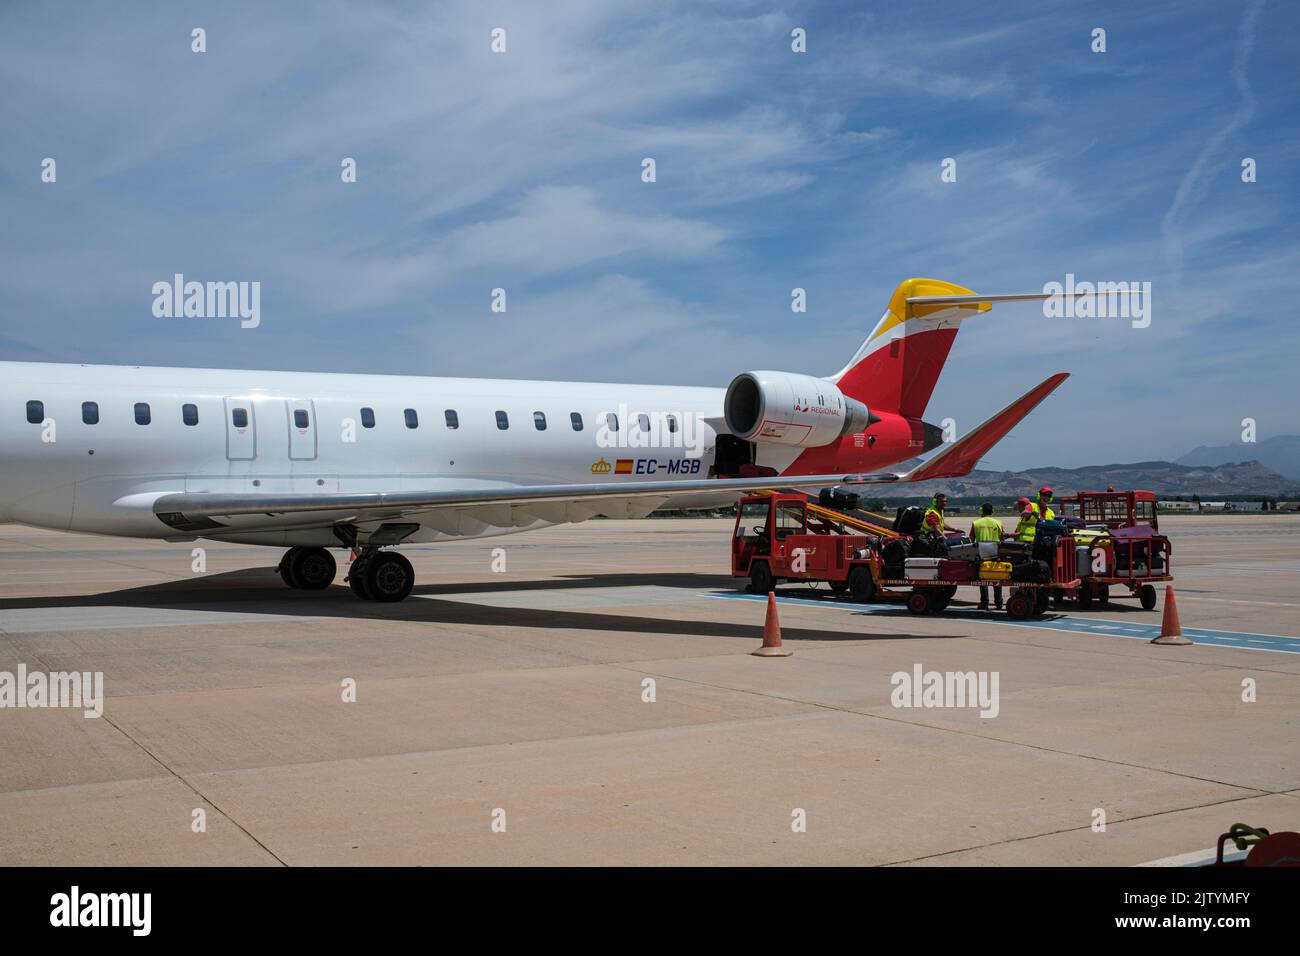 Équipage au sol, manutentionnaires de bagages avec chariots chargés de valises par un avion de Madrid à Grenade, un avion Bombardier CRJ1000, Espagne Banque D'Images